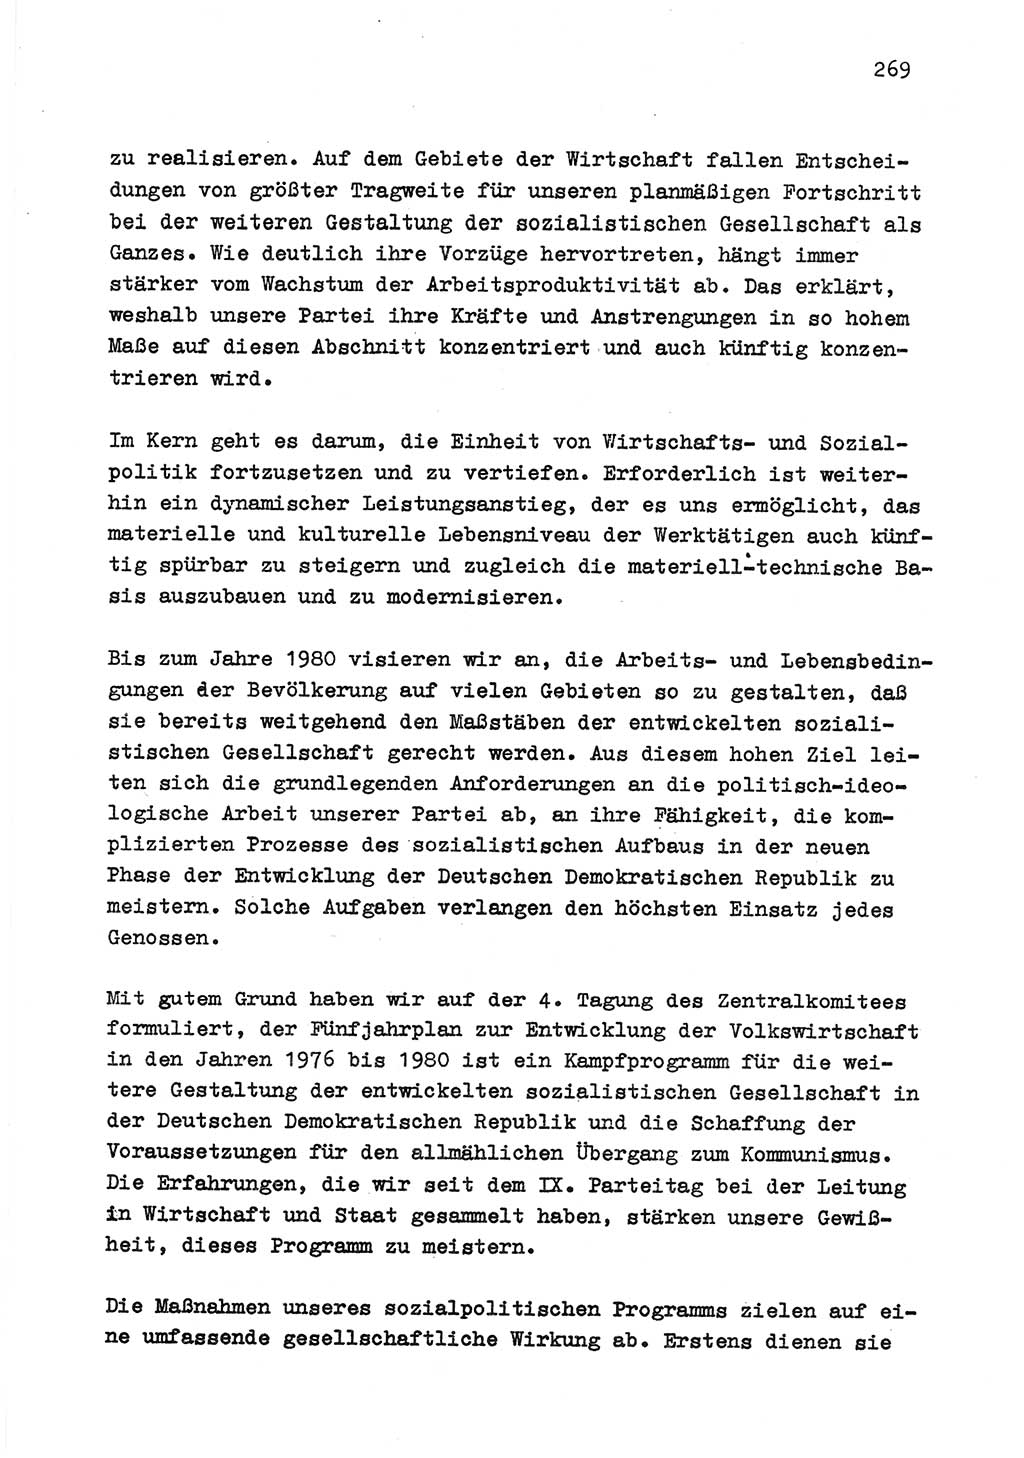 Zu Fragen der Parteiarbeit [Sozialistische Einheitspartei Deutschlands (SED) Deutsche Demokratische Republik (DDR)] 1979, Seite 269 (Fr. PA SED DDR 1979, S. 269)